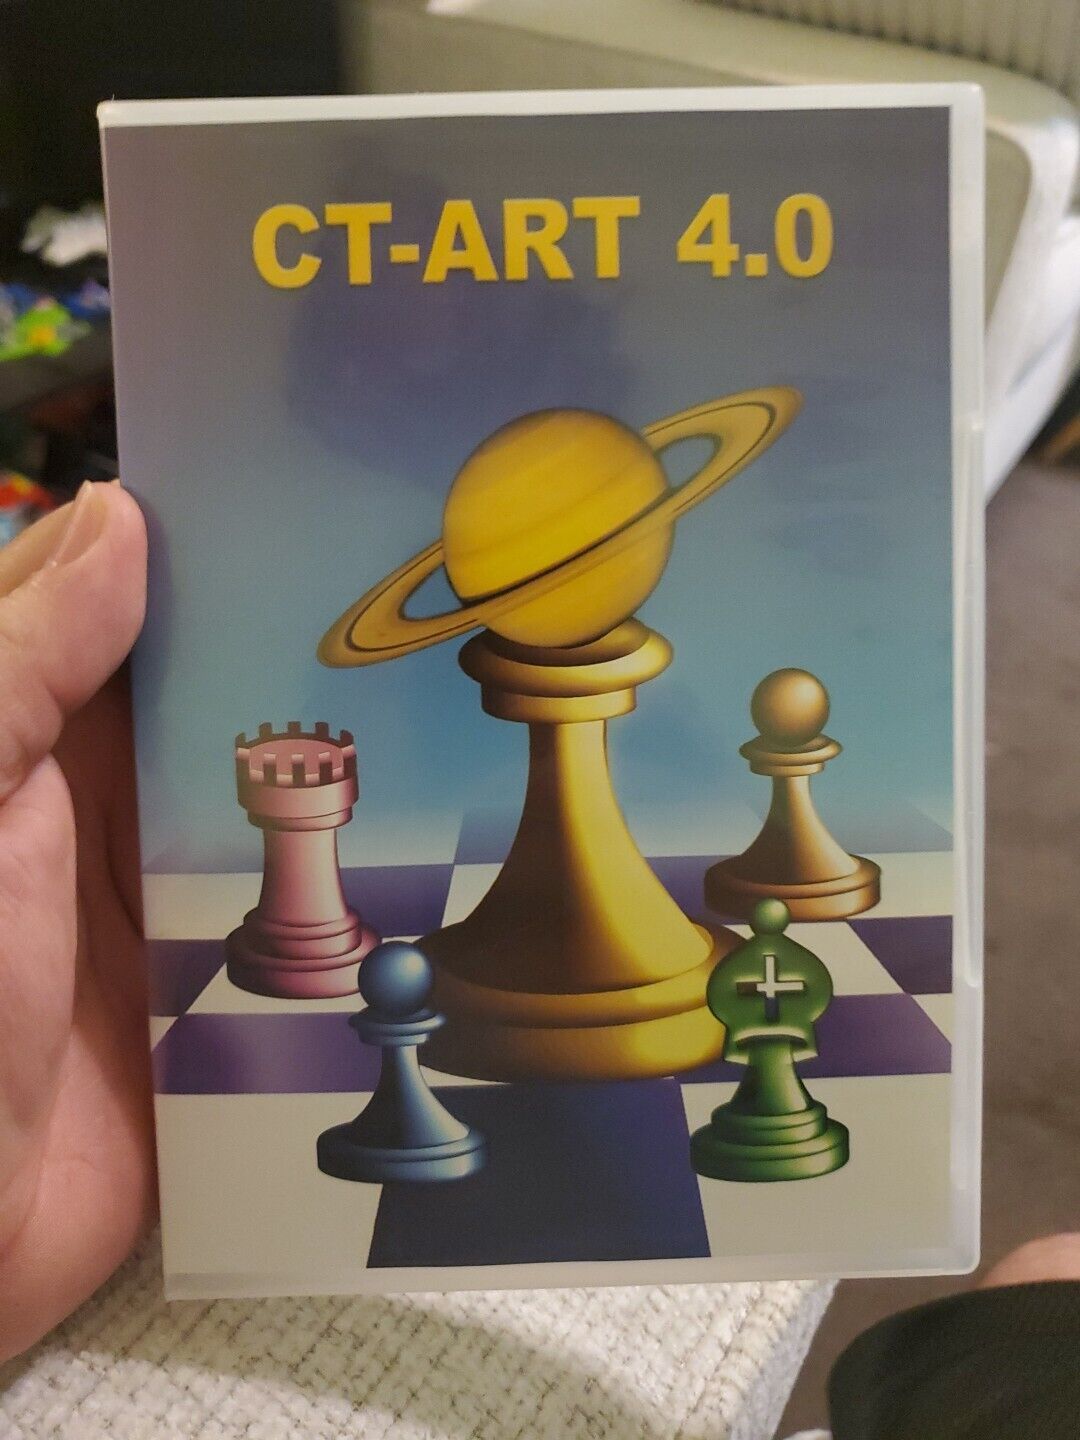 2011 Chess Tactics Art 4.0 PC Software DVD (CT-Art 4.0)